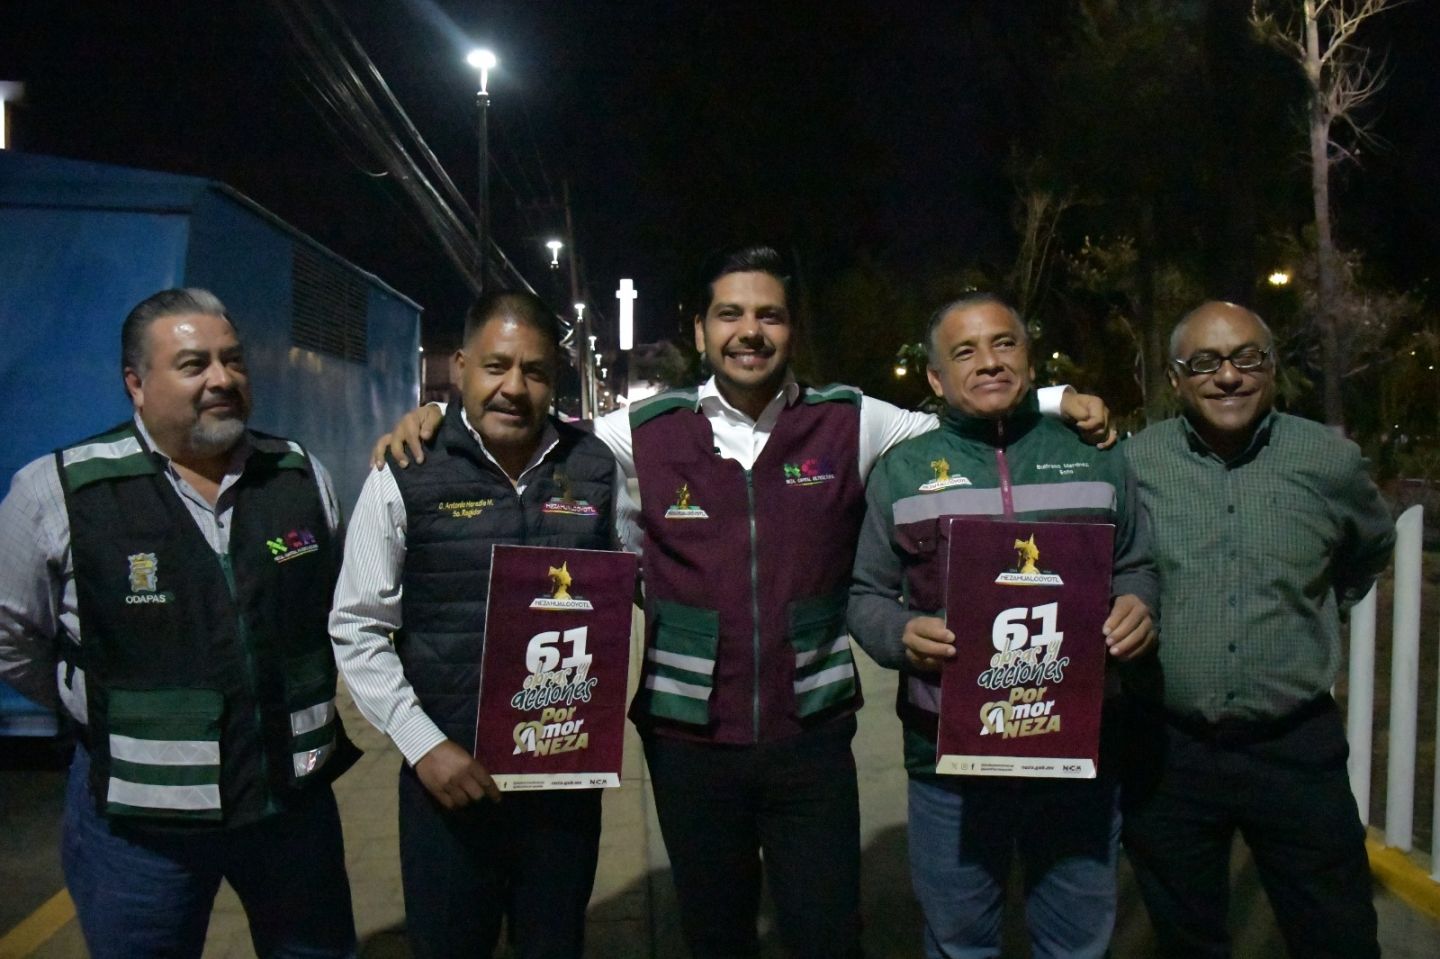 Para Reforzar la Seguridad en Nezahualcóyotl, Alcalde Adolfo Cerqueda pone en Marcha Nuevos Senderos Seguros..!